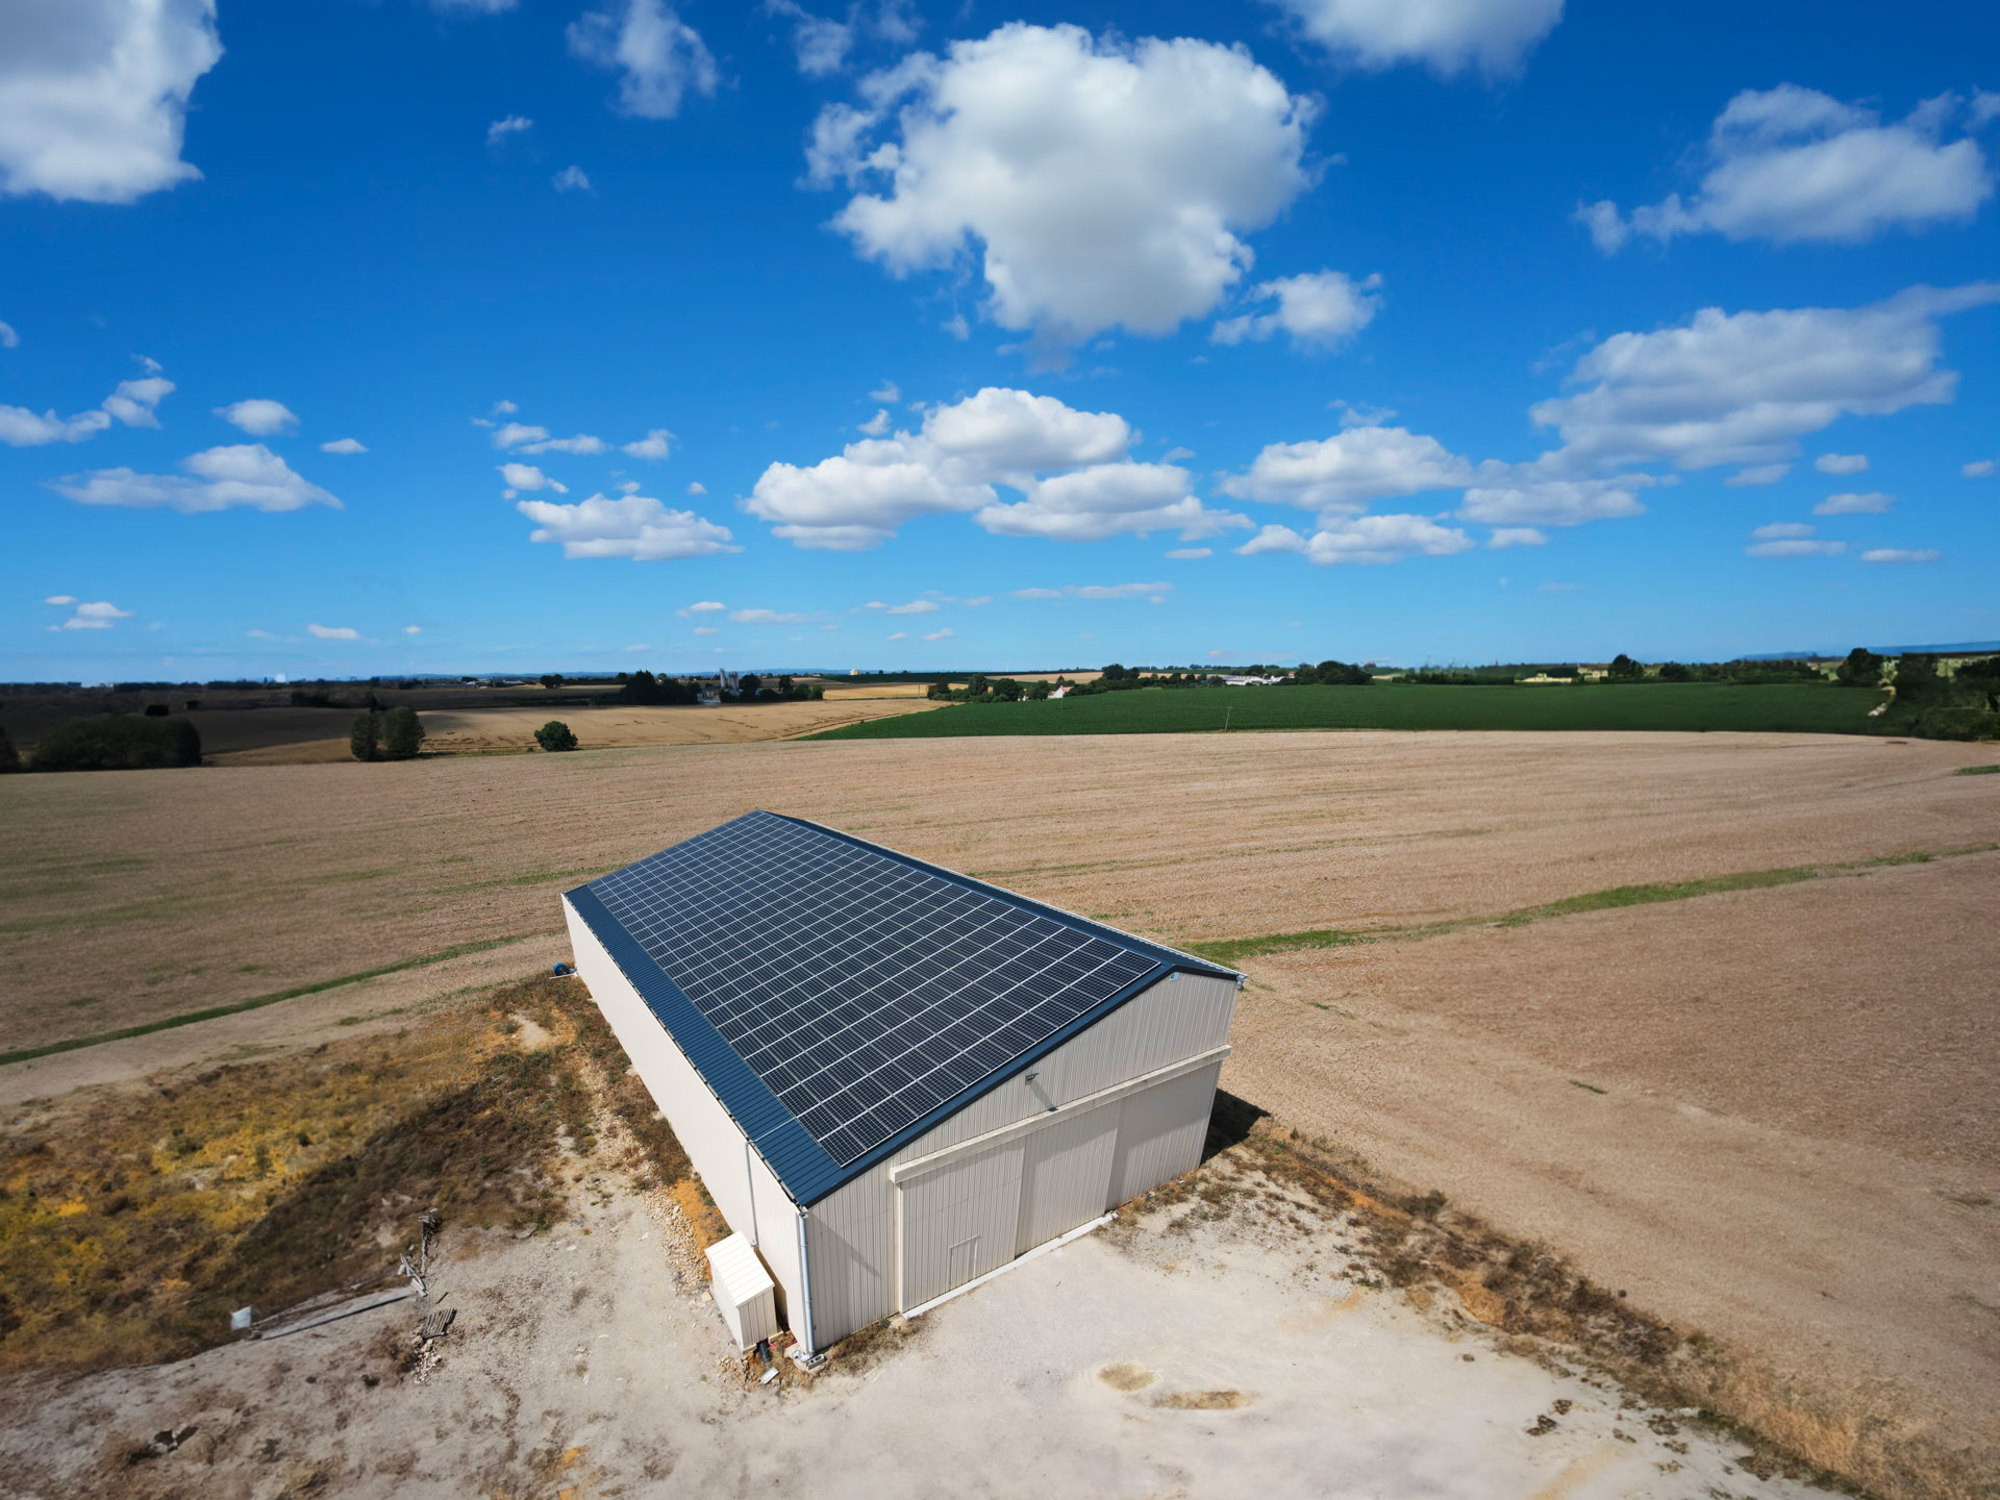 Bâtiment agricole équipé d'une solution solaire par Triangle Énergie, montrant une exploitation agricole moderne et durable